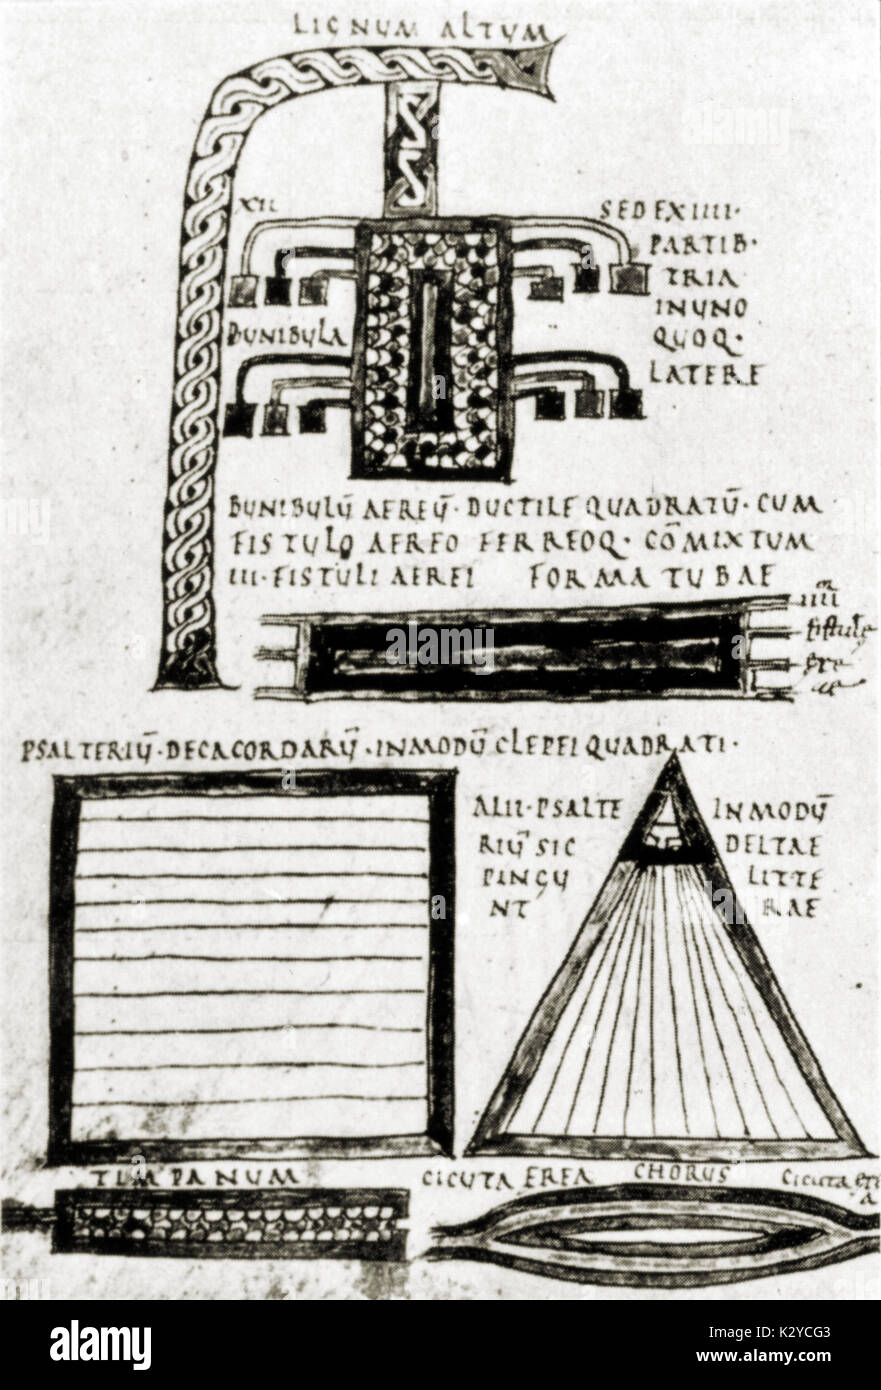 Anicius Manlius Severinus Boezio. Pagina dal suo trattato 'De Musica' che mostra vari strumenti, di cui dieci corde del Salterio. Filosofo romano e teorico (475-524). Foto Stock